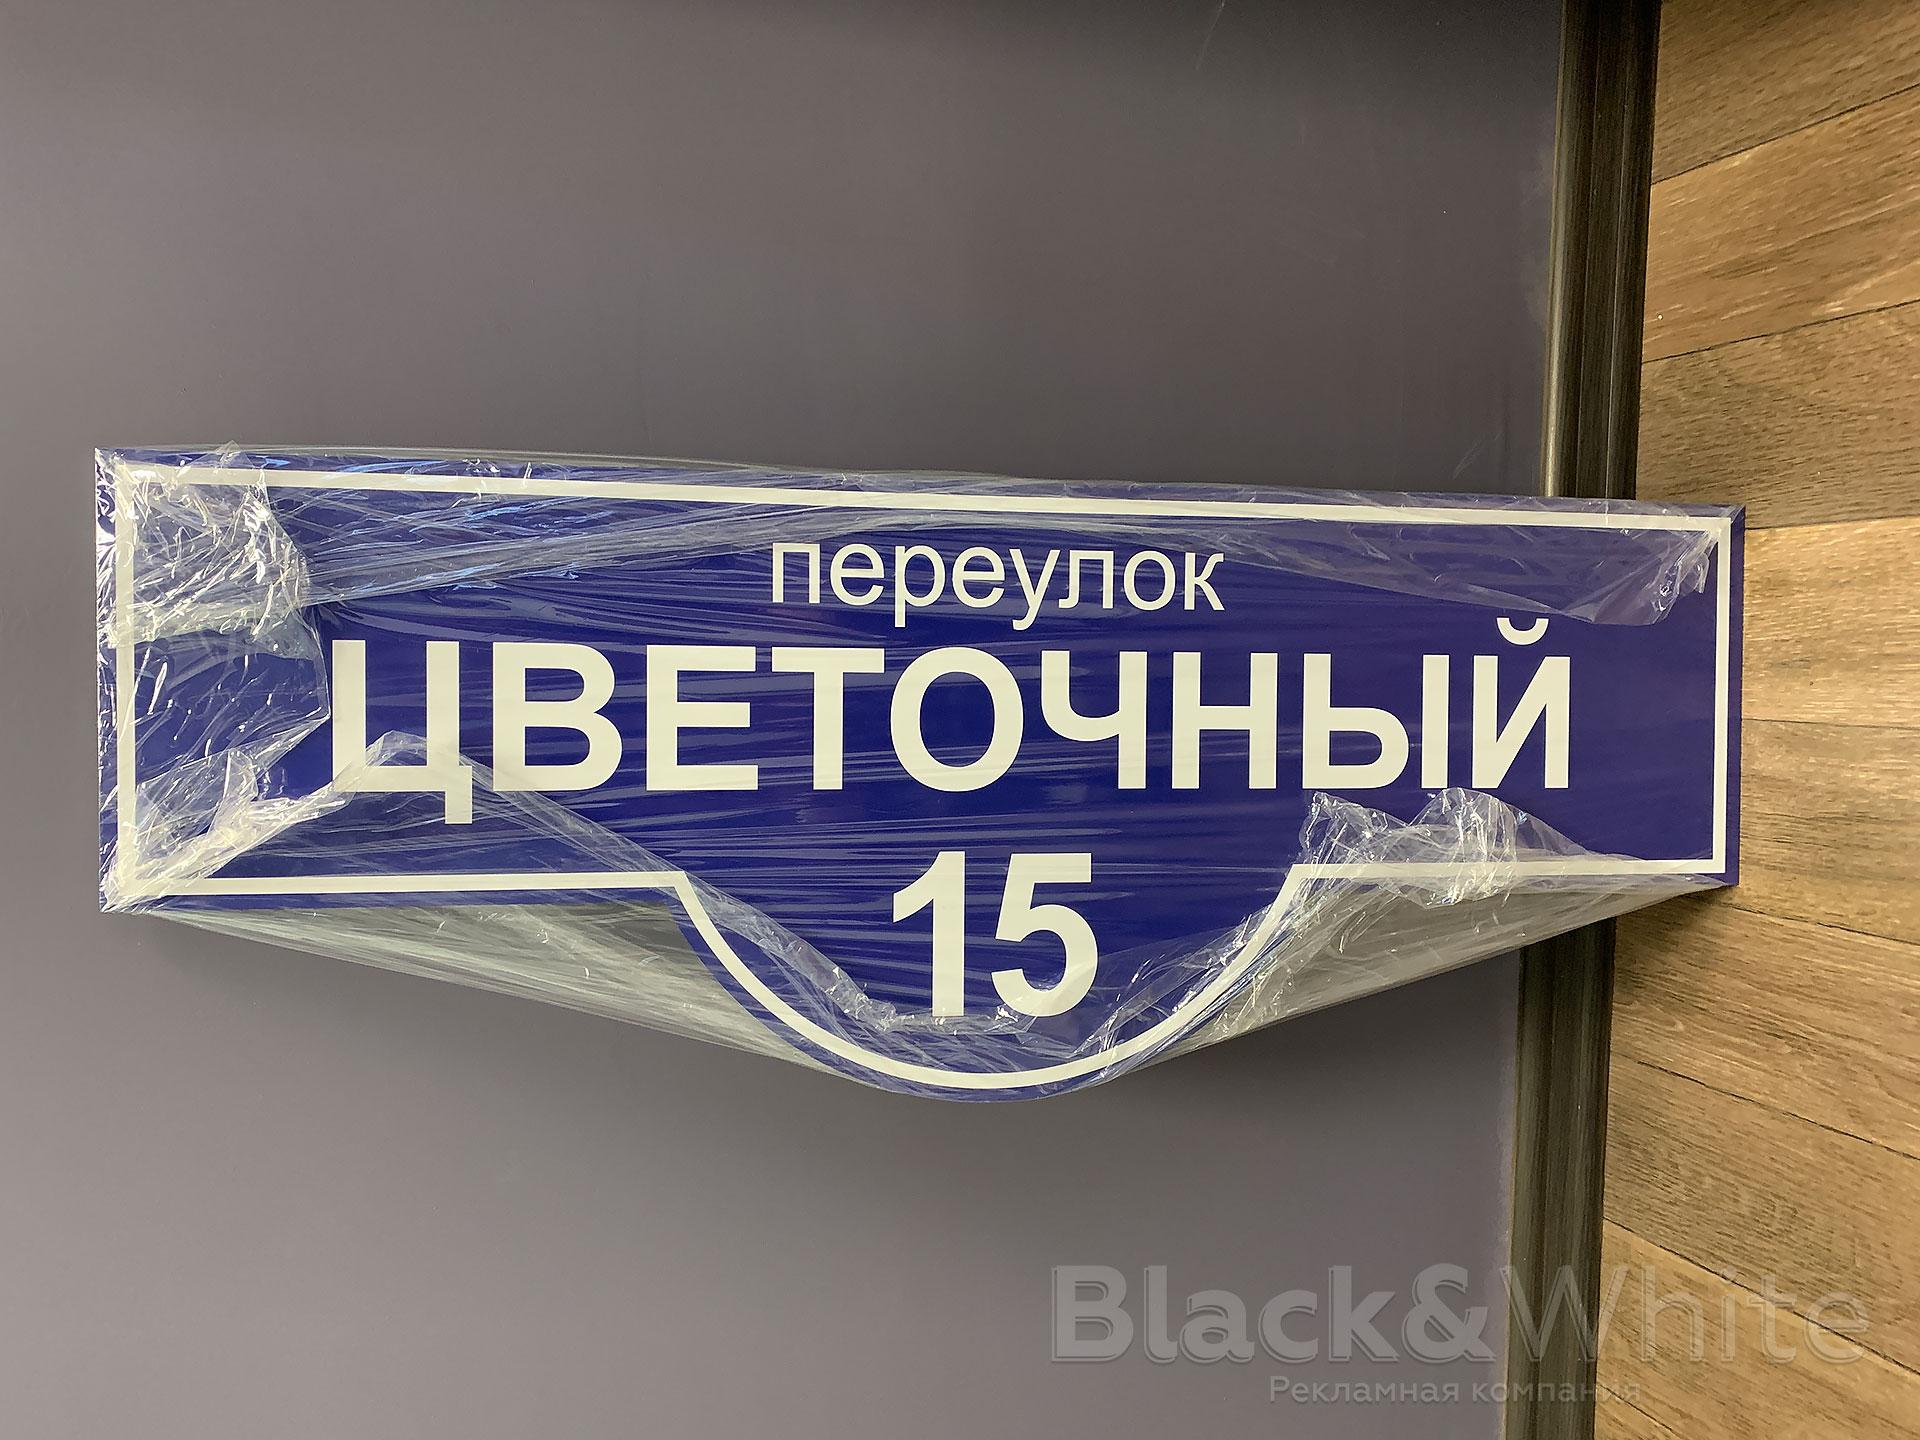 Адресные-таблички-домовые-знаки-красноярск-Black&White...jpg